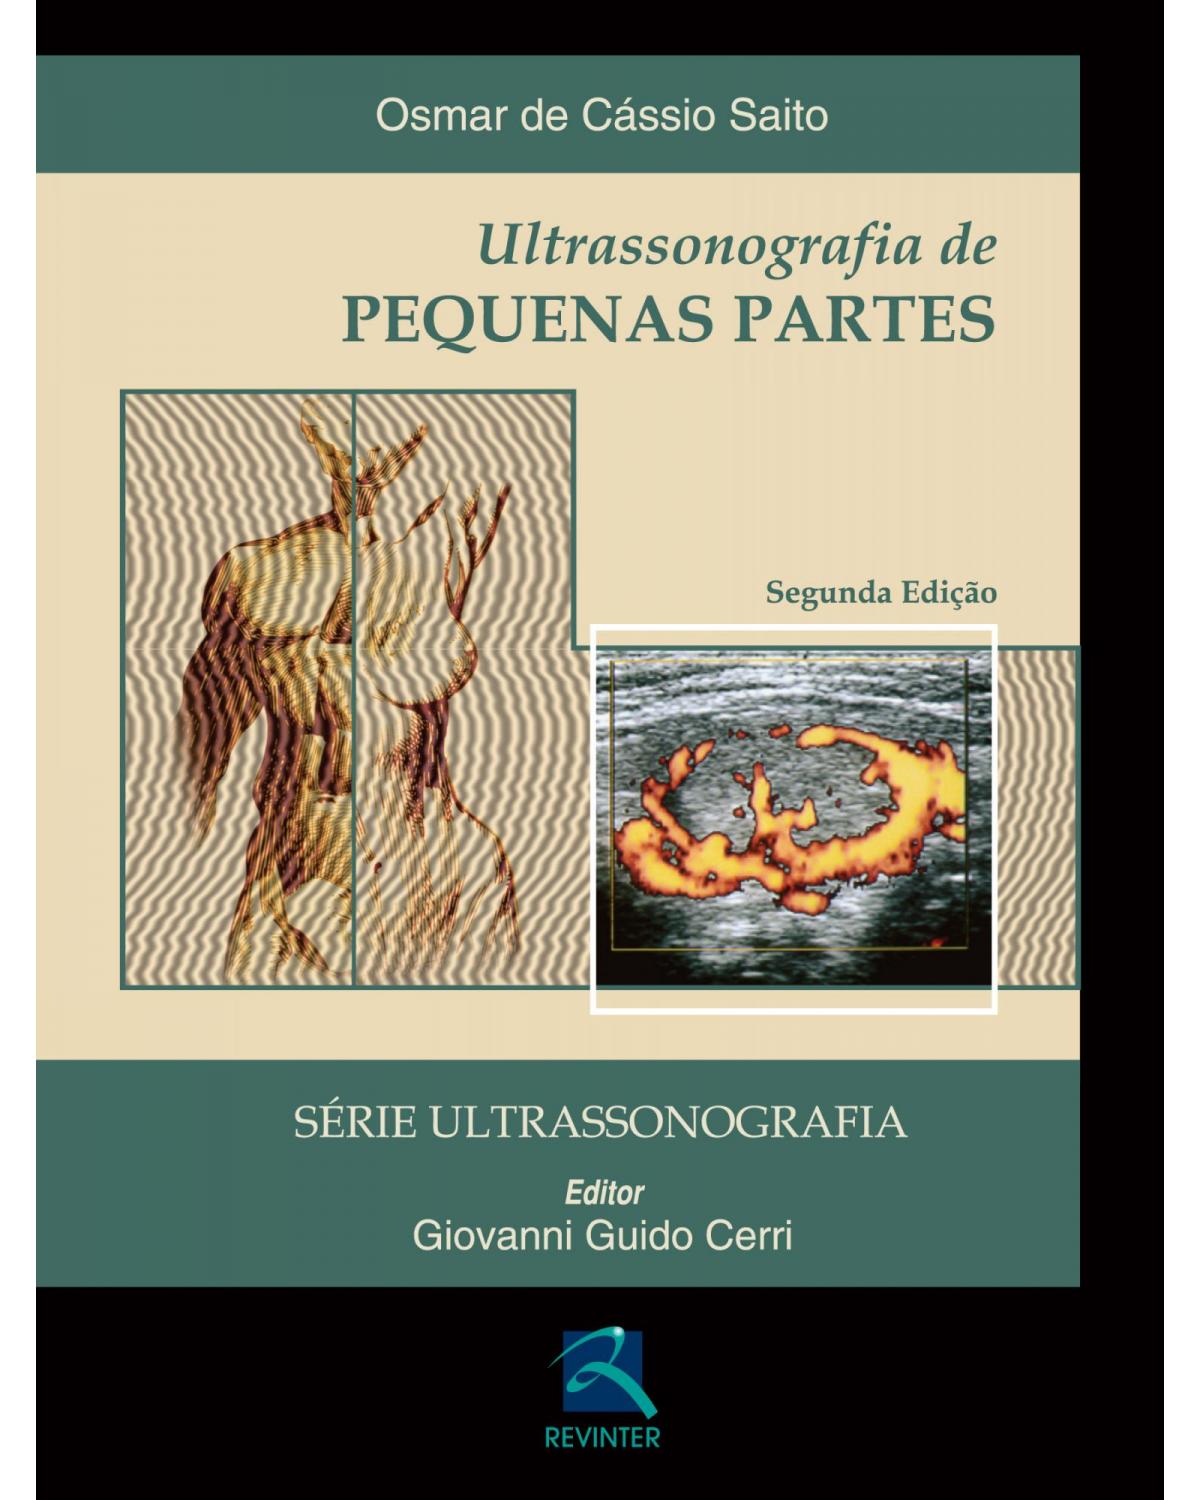 Ultrassonografia de pequenas partes - 2ª Edição | 2013